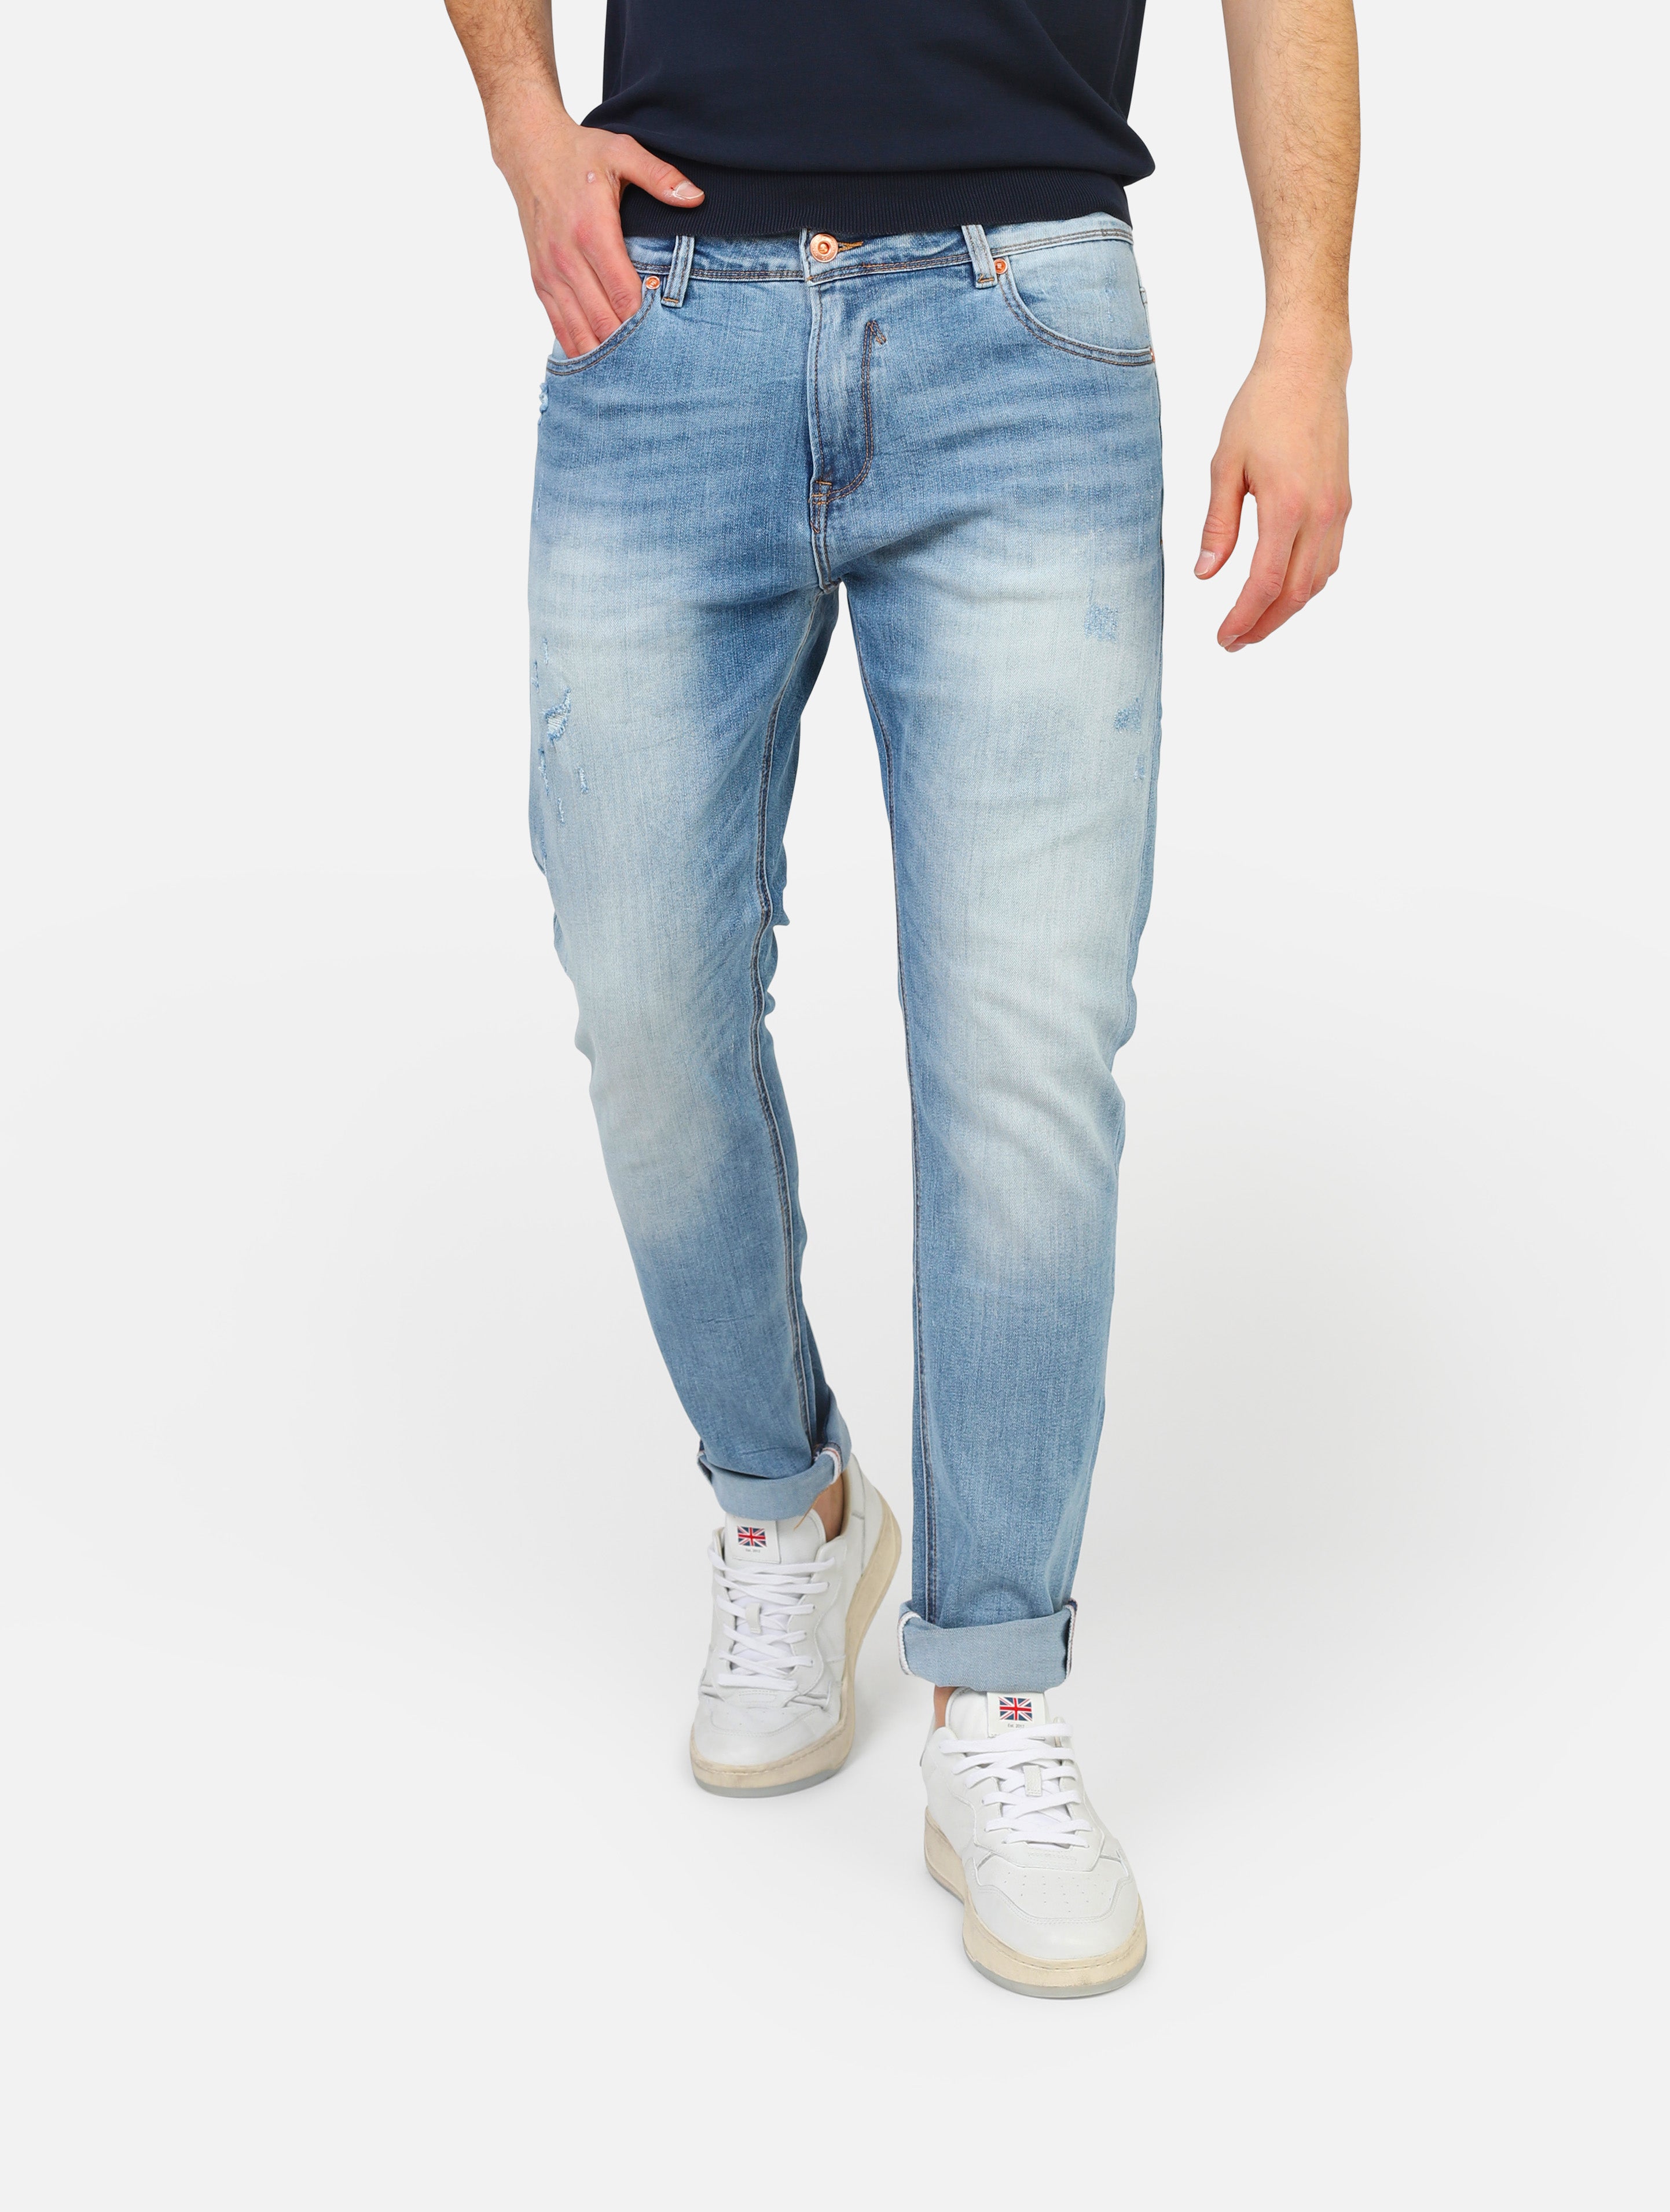 Jeans gianni lupoi -  denim man  - 1